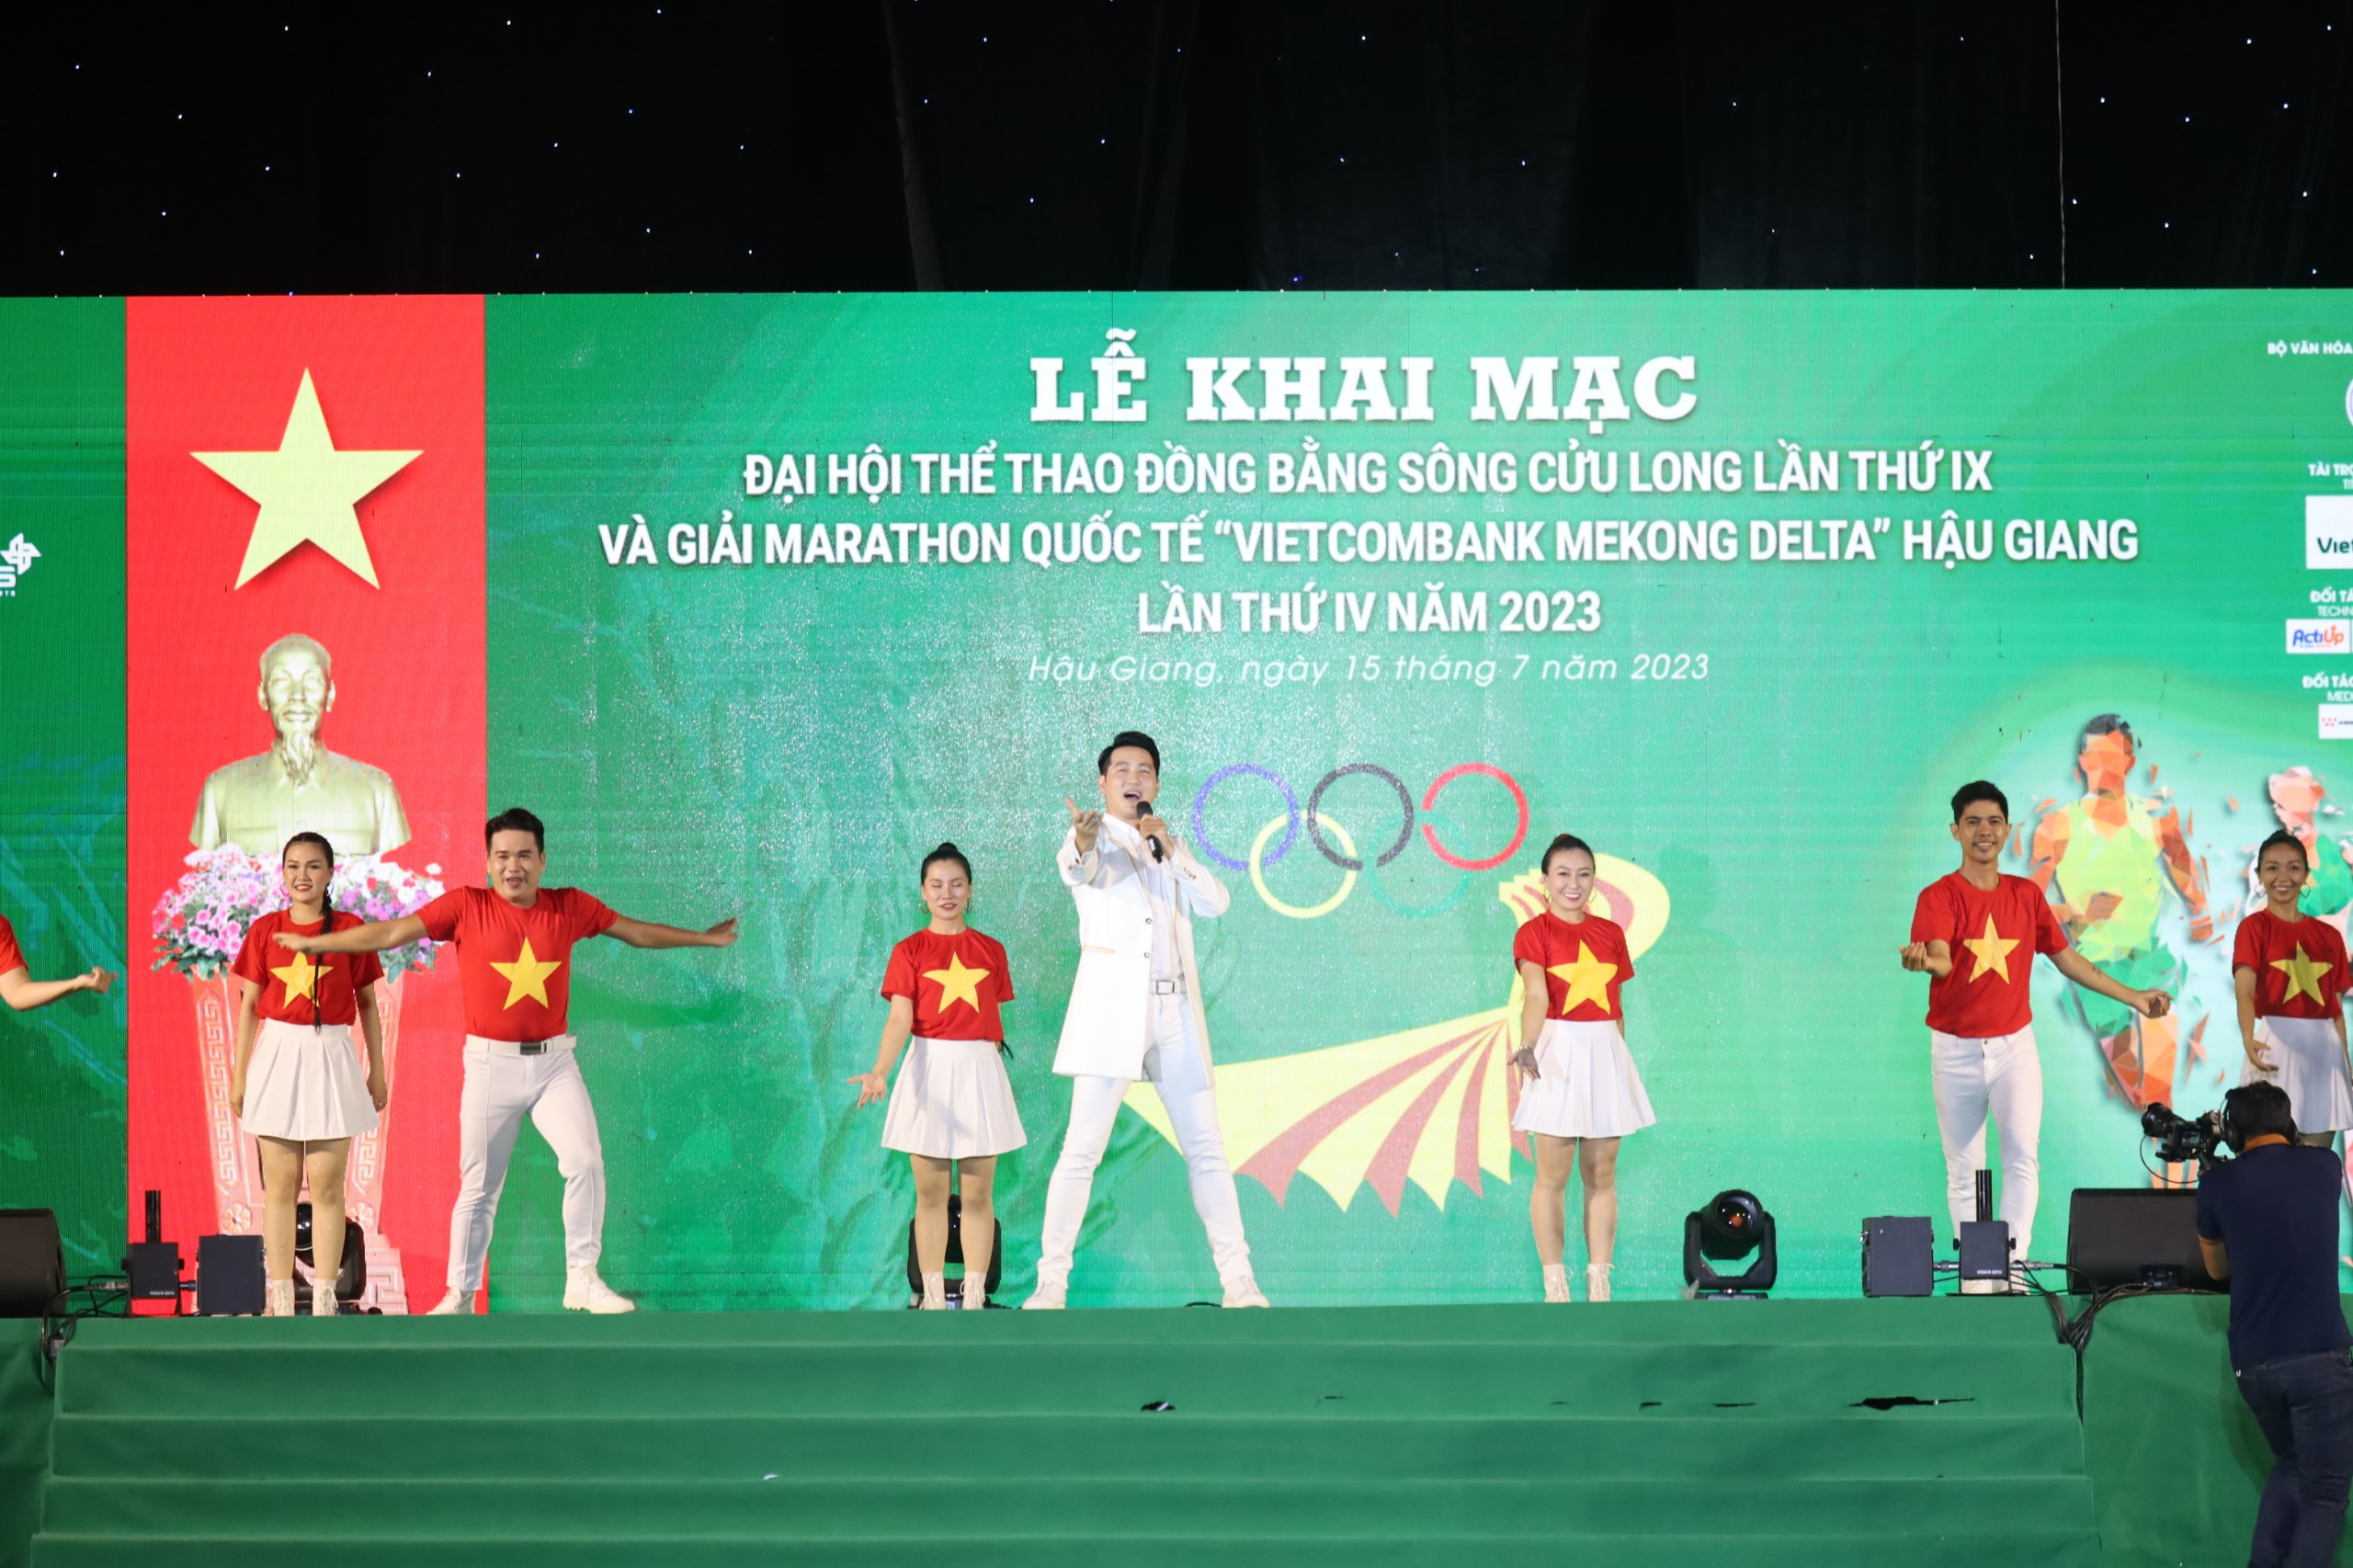 Ca sĩ Nguyễn Phi Hùng trình diễn tại lễ khai mạc.